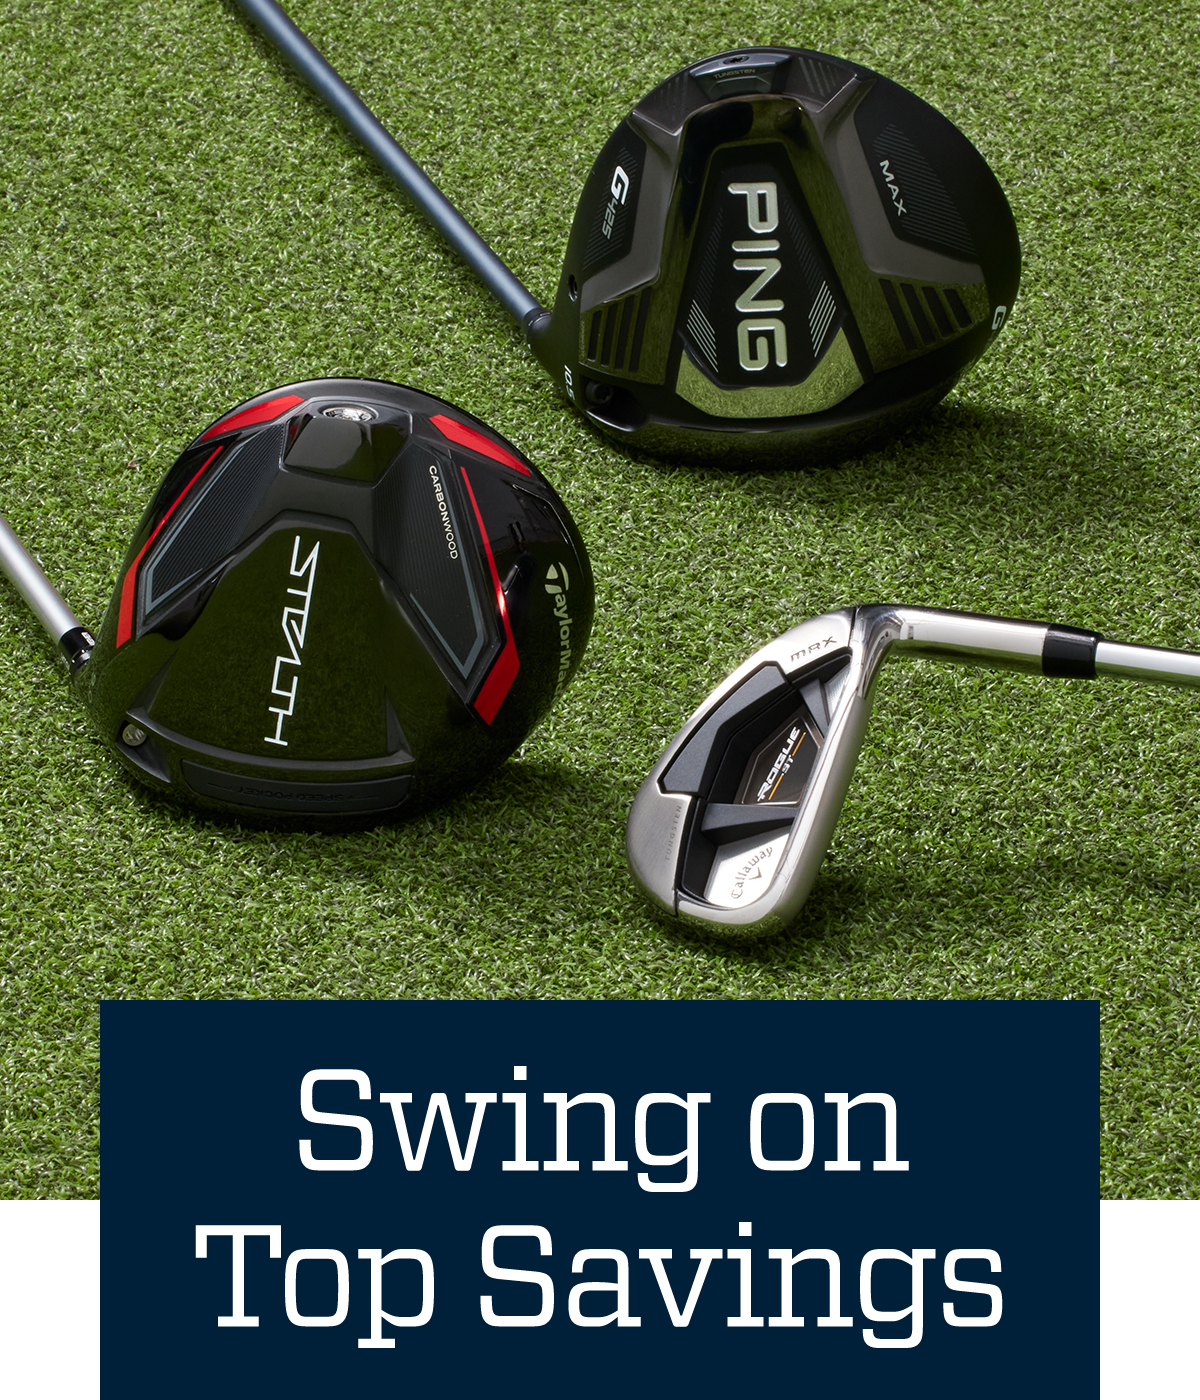  Swing on top savings.